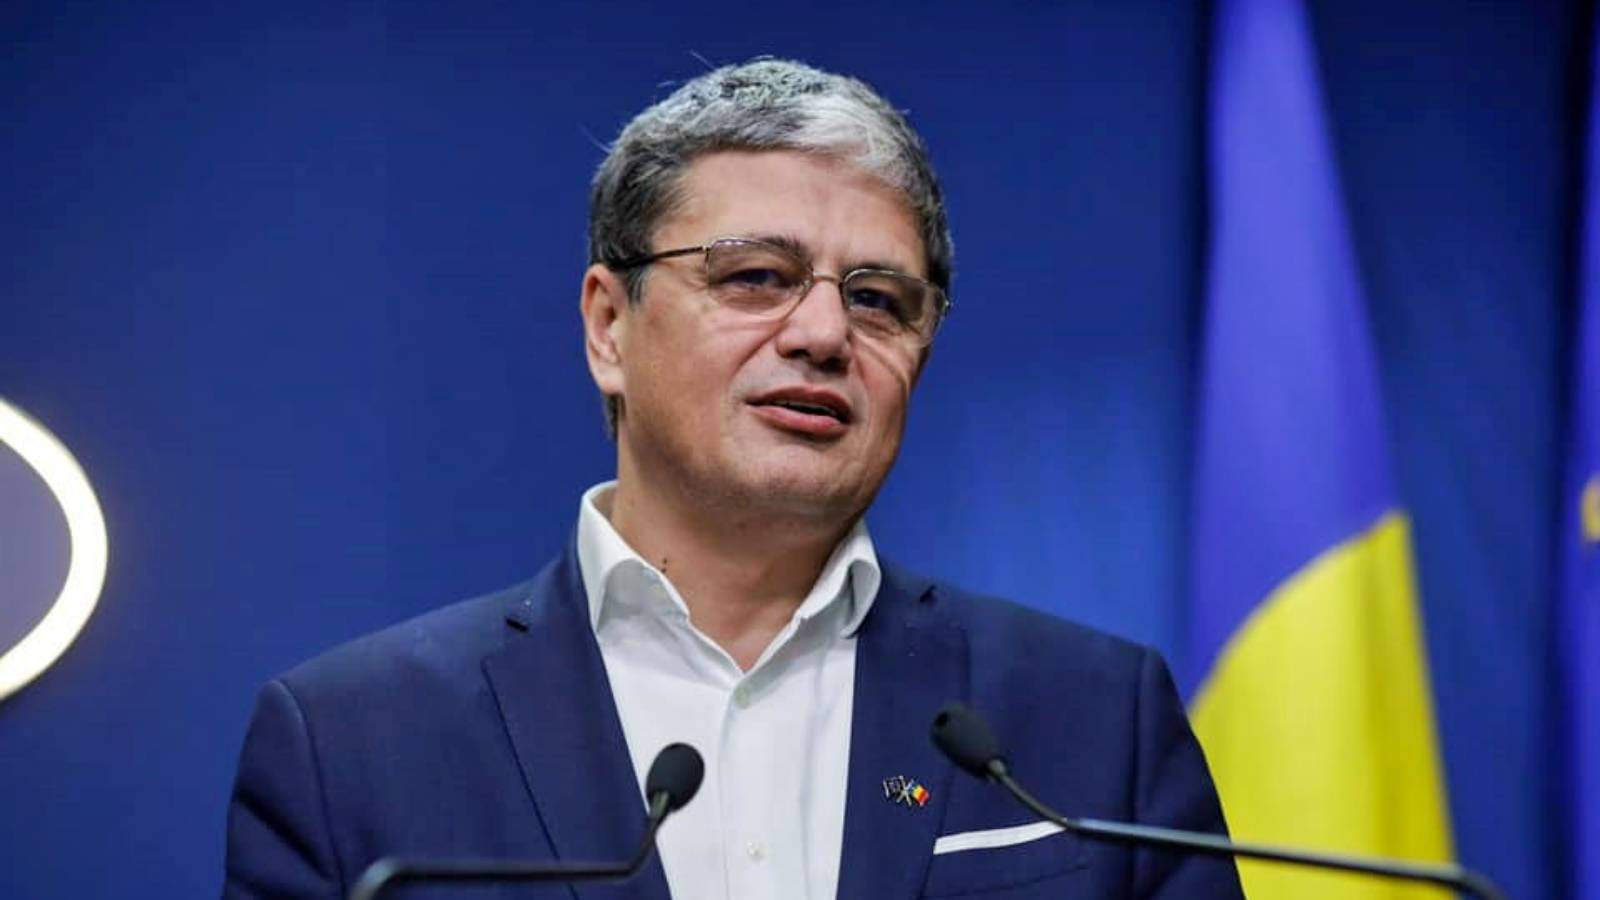 Marcel Bolos LAST MINUTE Misure ufficiali adottate dal governo rumeno